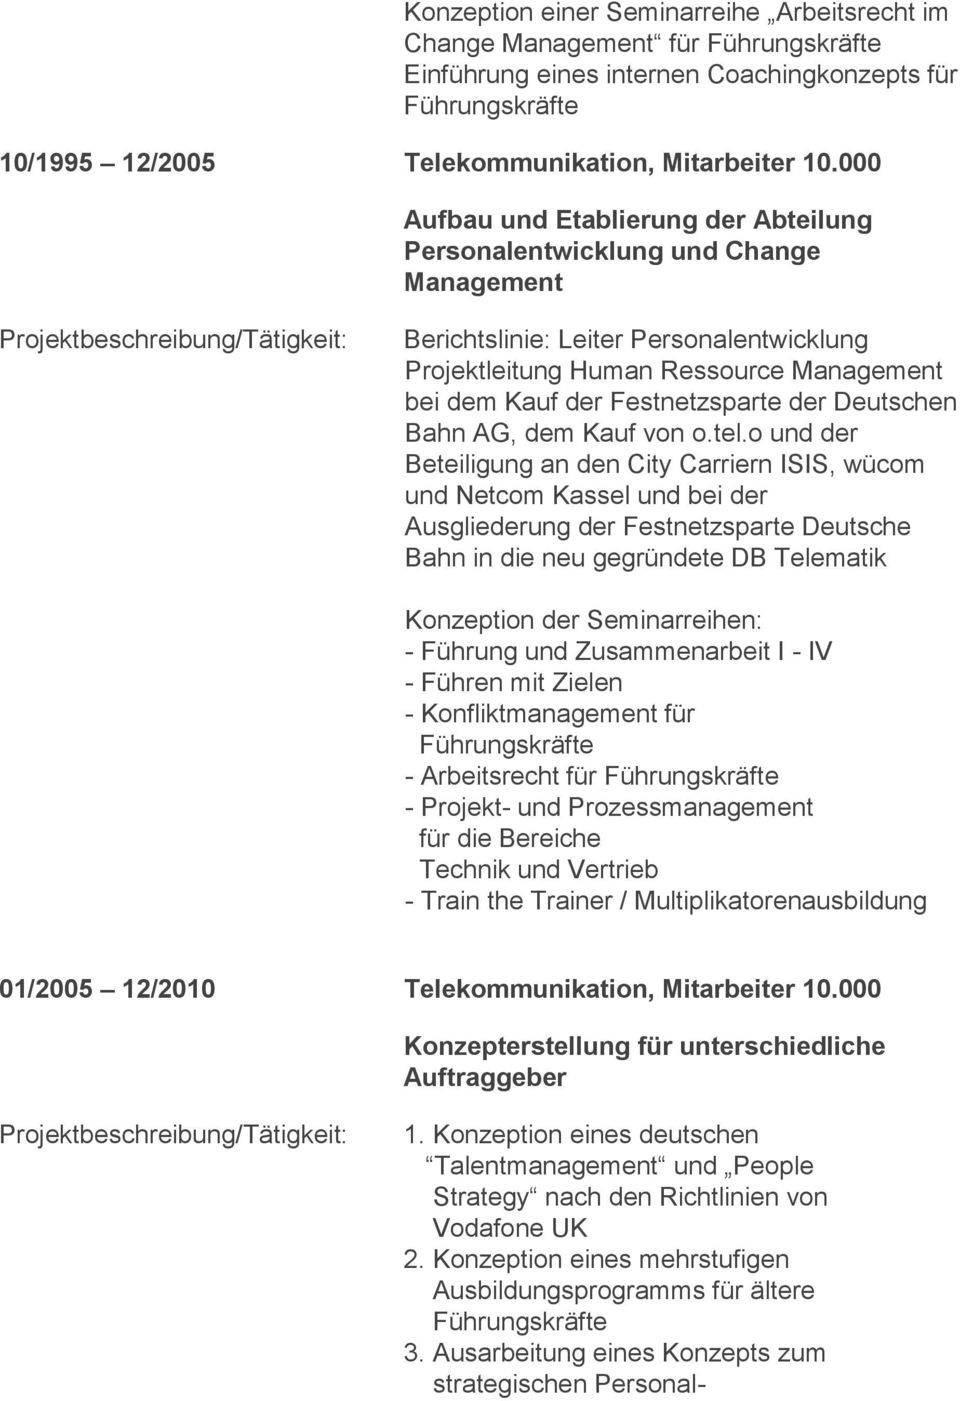 Festnetzsparte der Deutschen Bahn AG, dem Kauf von o.tel.